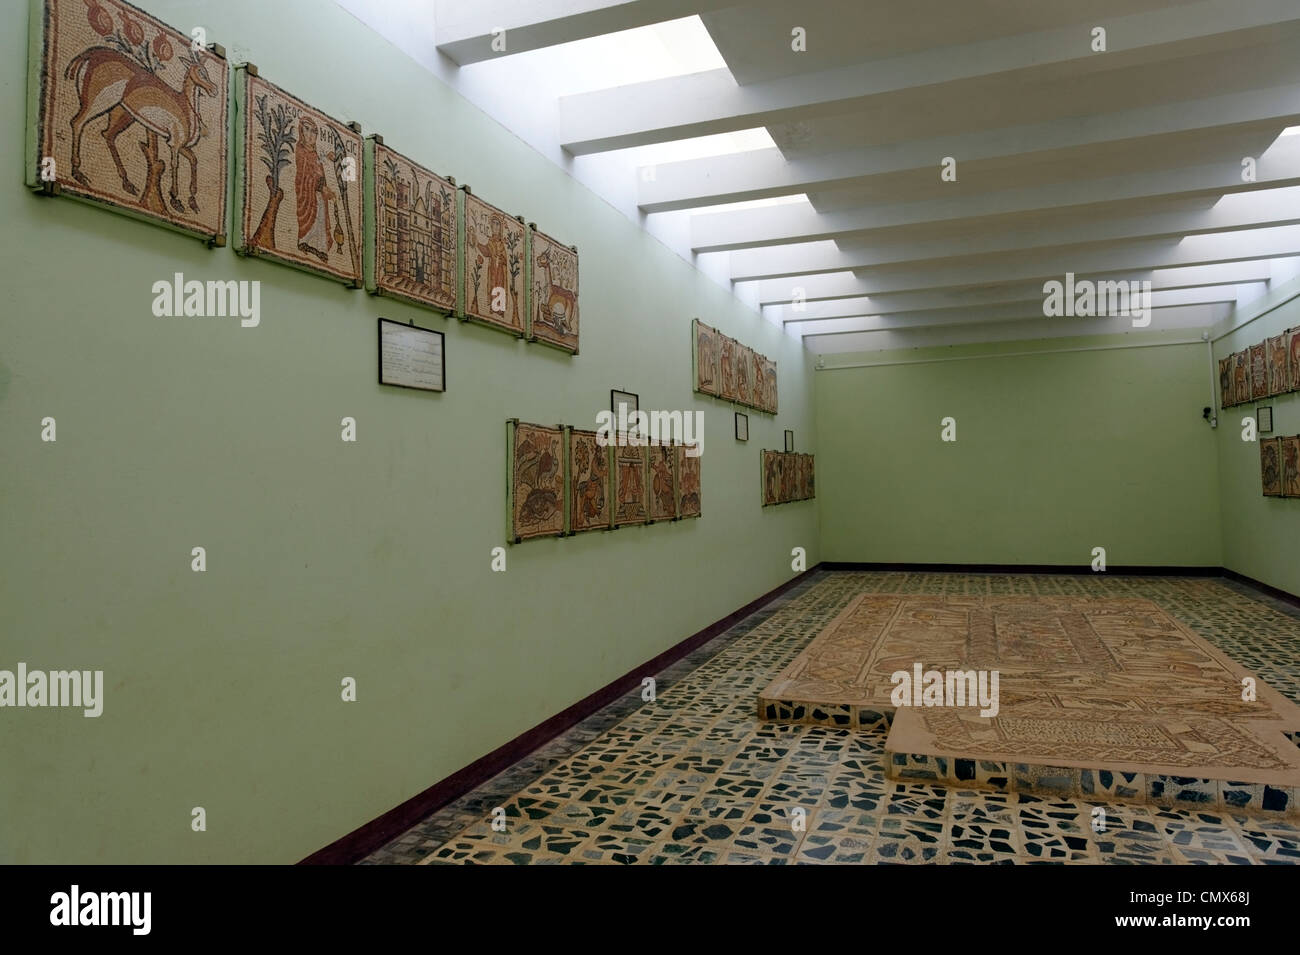 Vista interior del museo de la extraordinaria colección de mosaicos que se encontraron en la Iglesia Oriental. Foto de stock